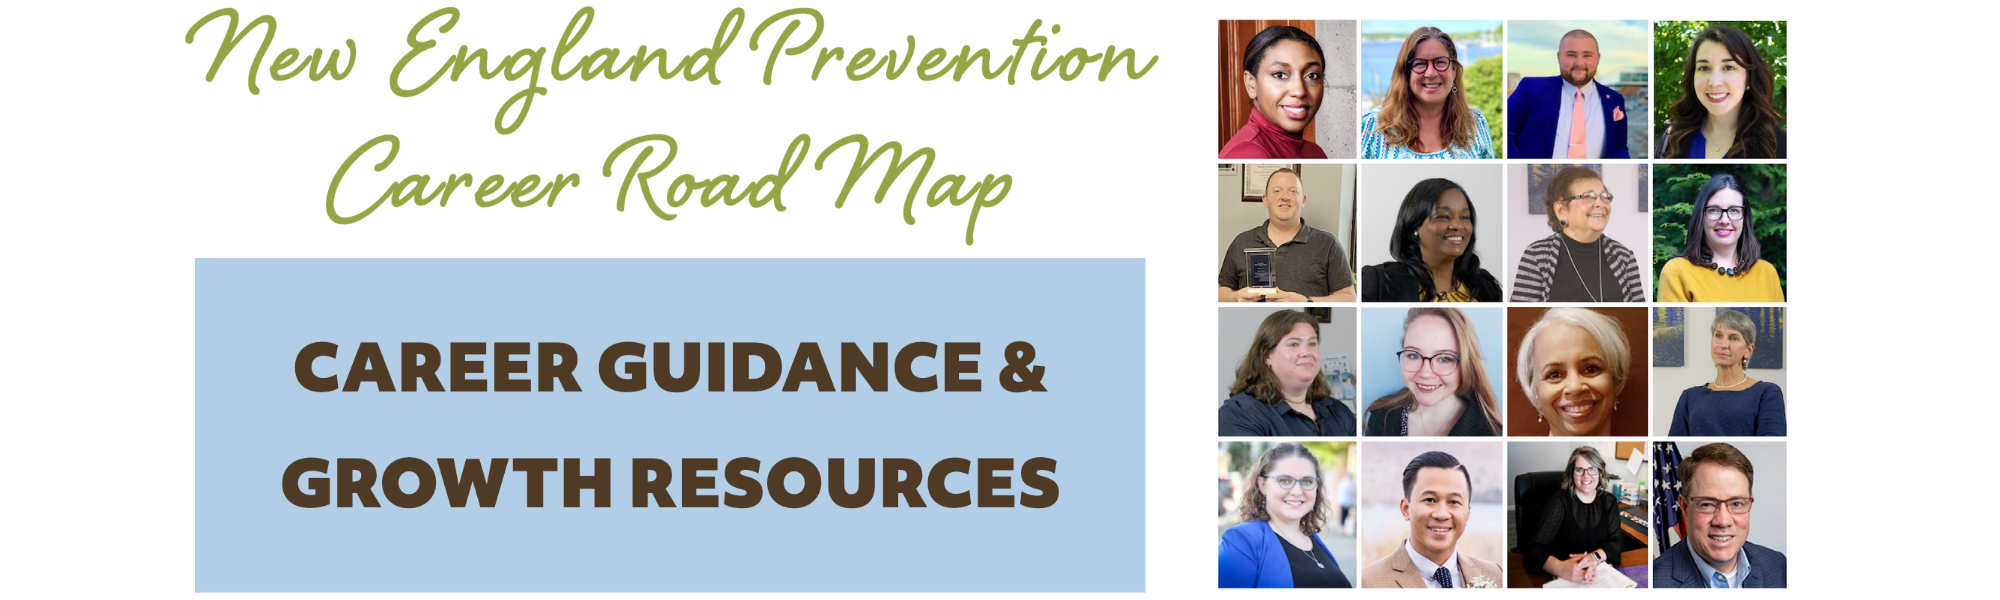 New England Prevention Career Roadmap Header